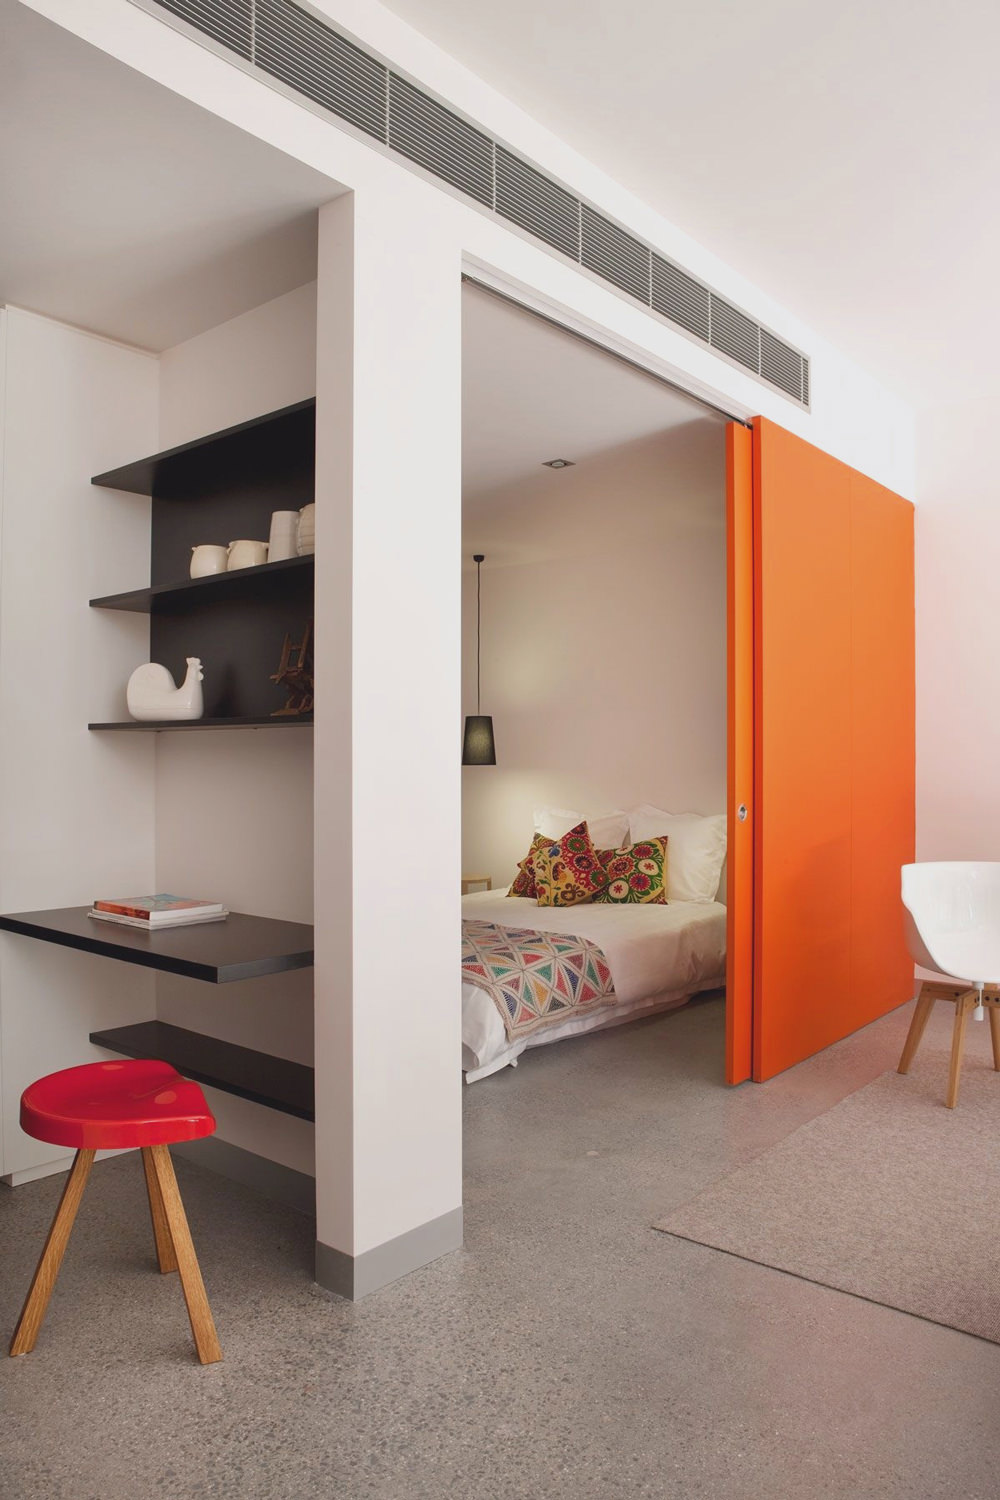  Cửa trượt màu cam nổi bật không chỉ tạo sự riêng tư tuyệt đối mà còn là điểm nhấn cho phòng ngủ giữa không gian ngập tràn sắc trắng.